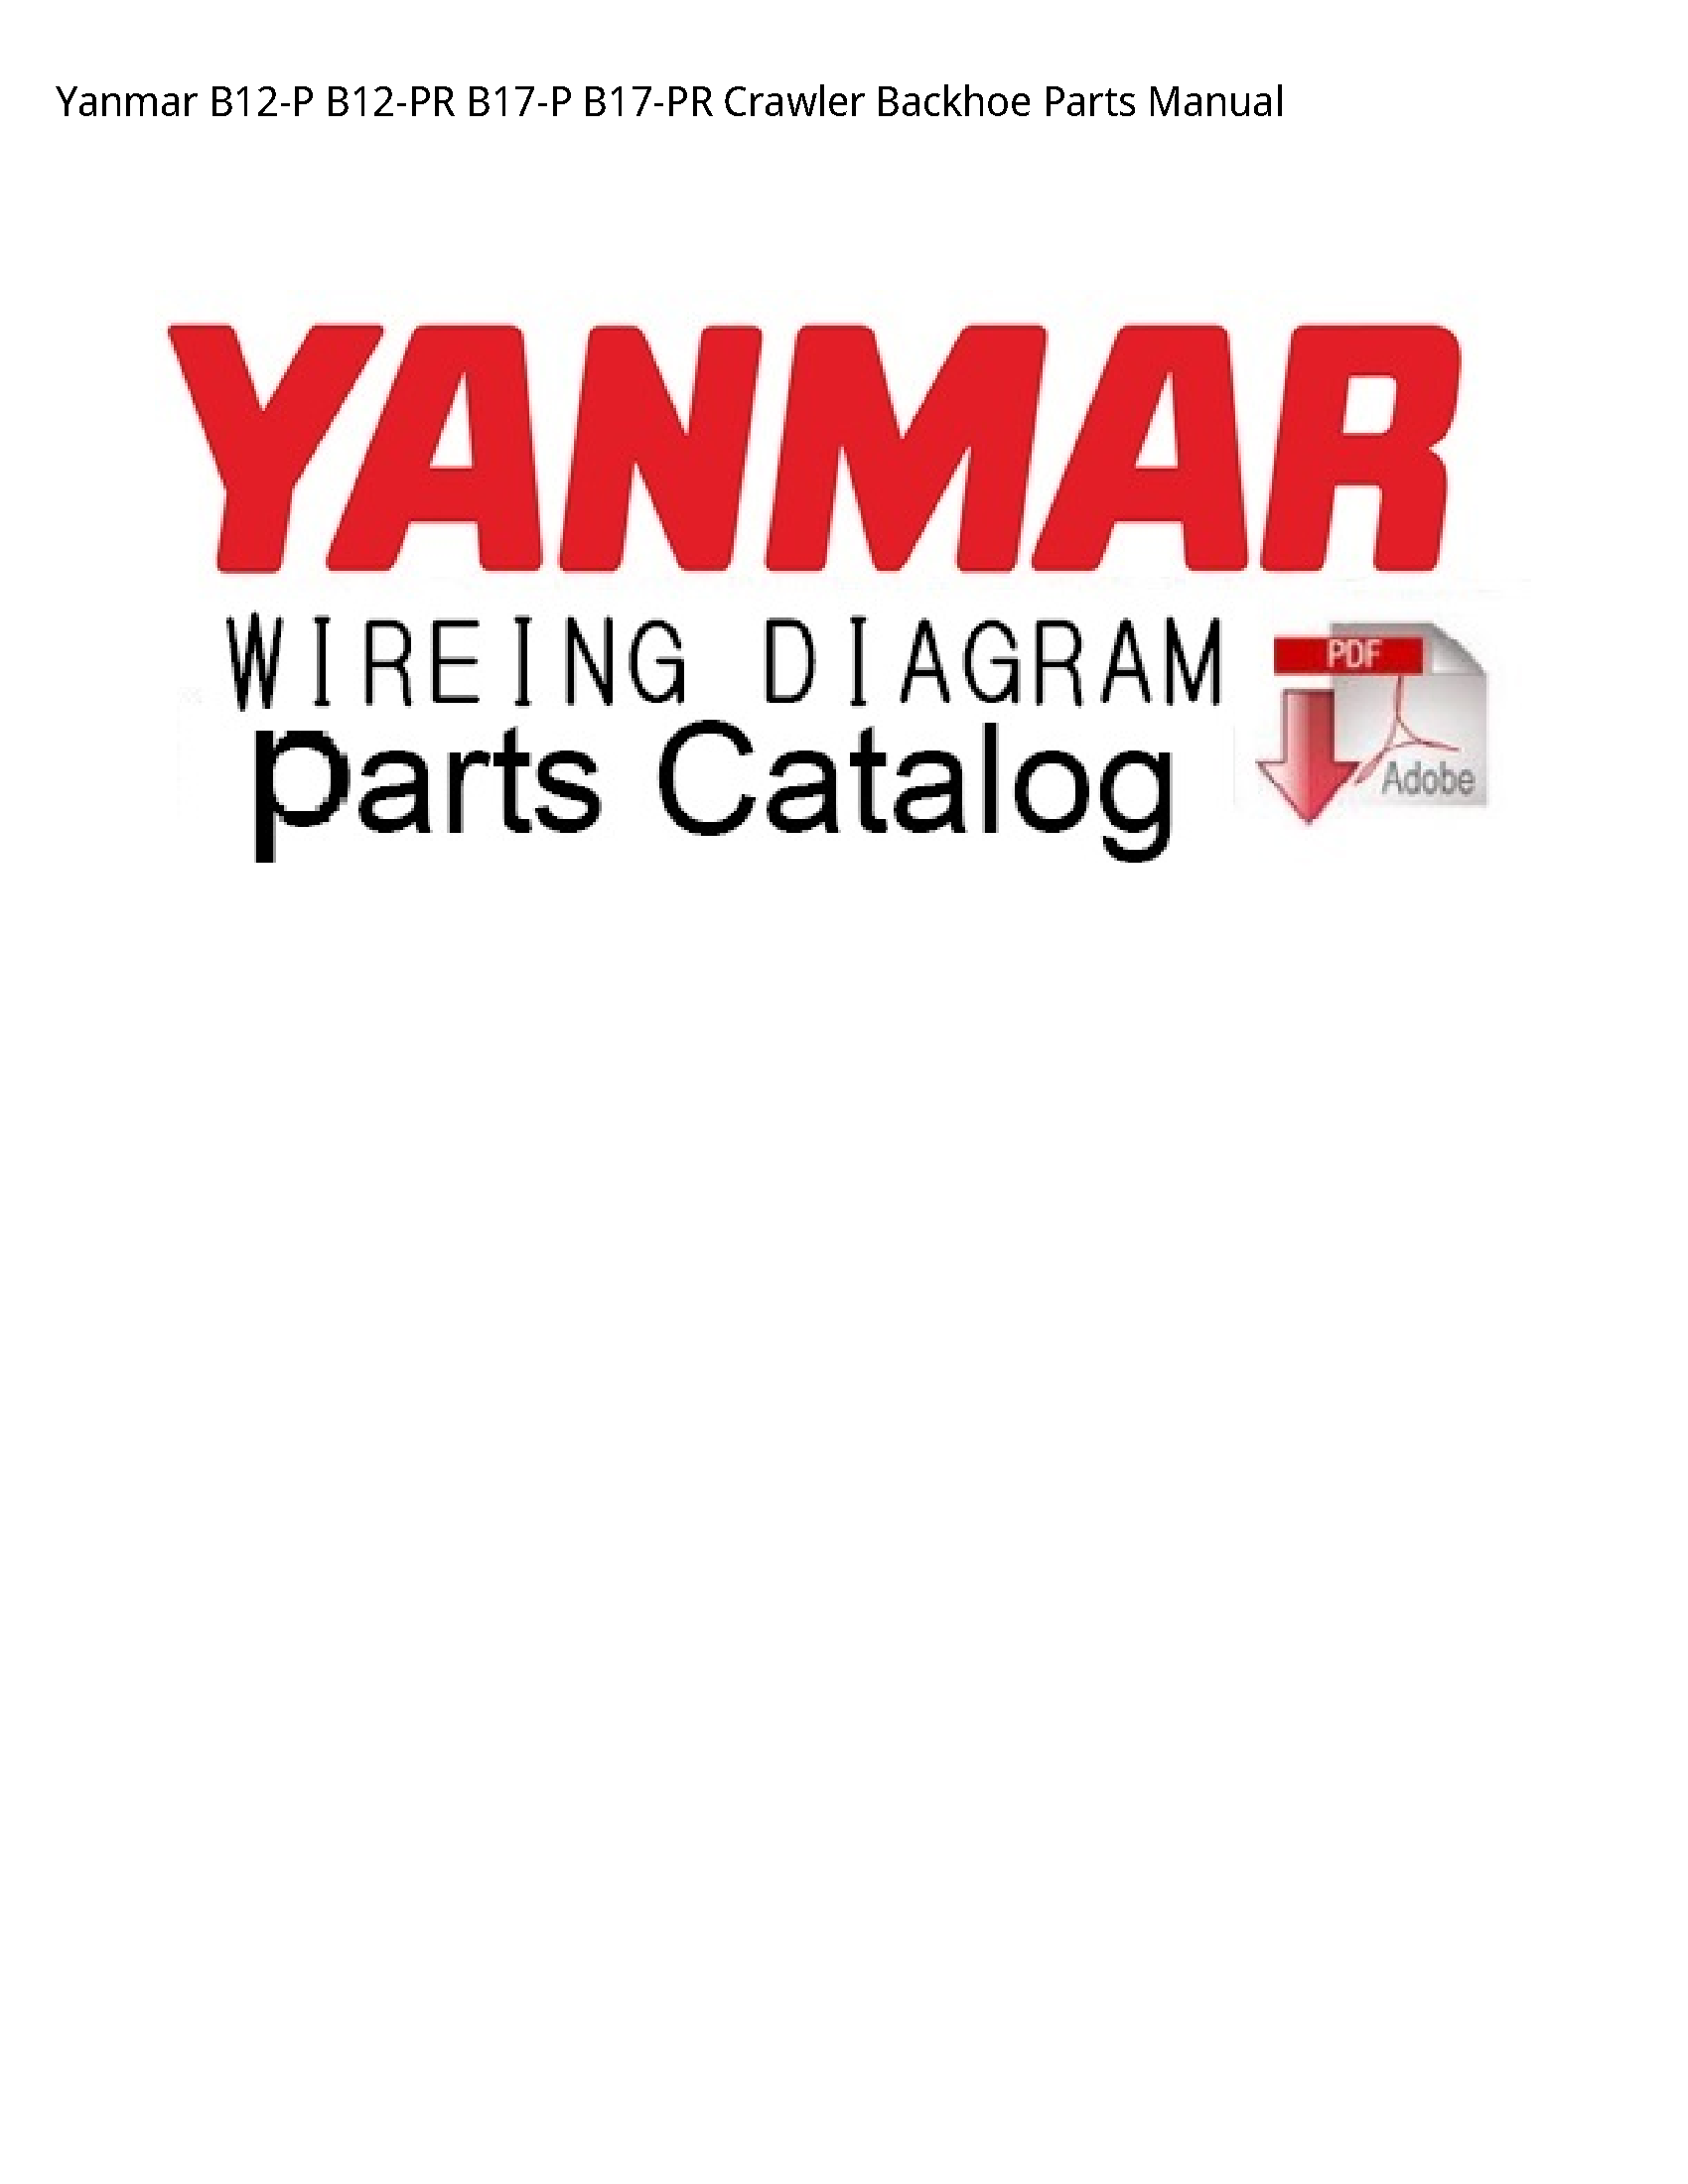 Yanmar B12-P Crawler Backhoe Parts manual